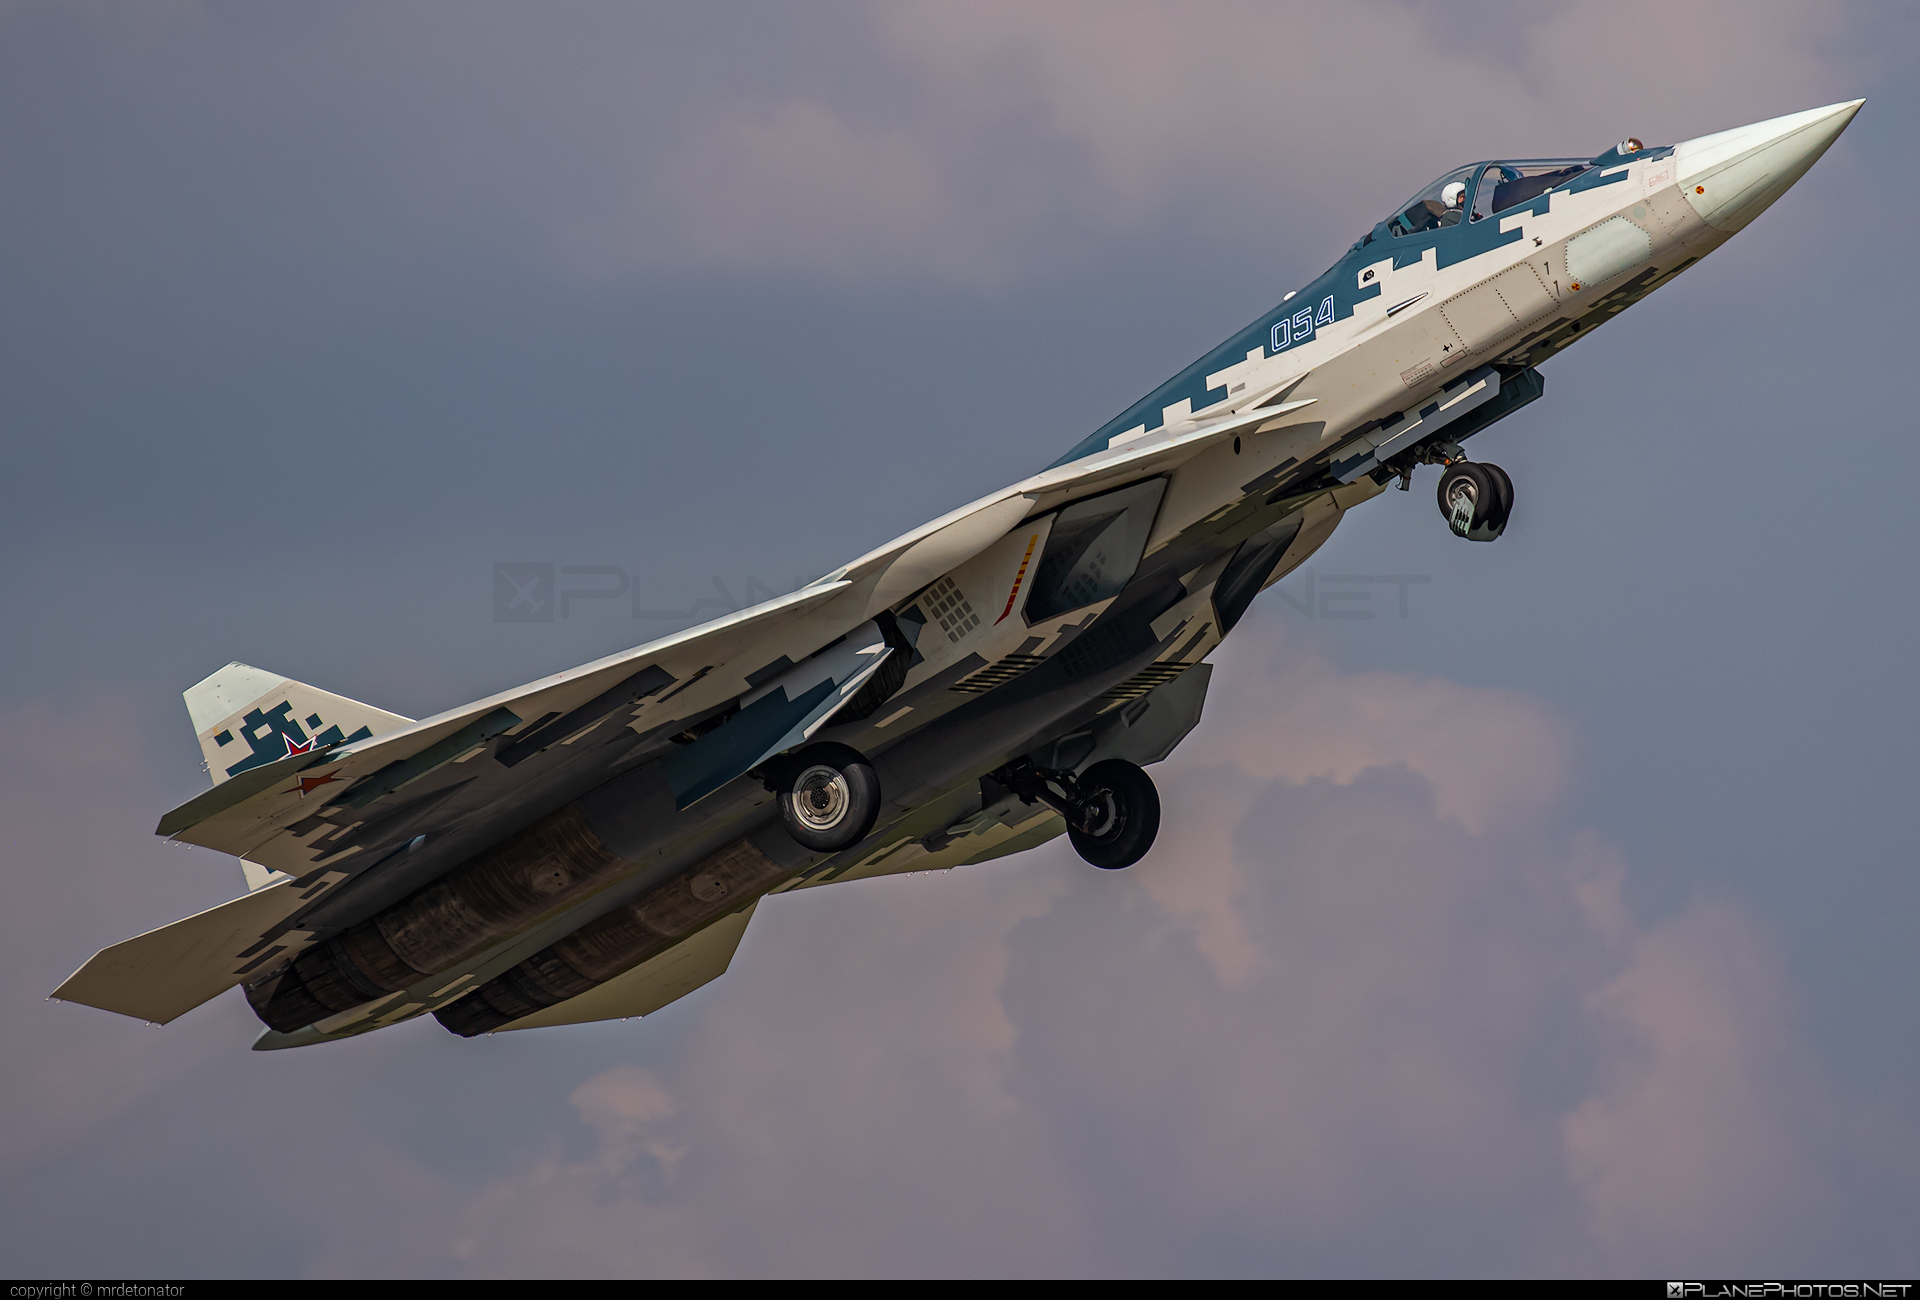 Sukhoi T-50 - 054 operated by Sukhoi Design Bureau #maks2019 #su57 #sukhoi #sukhoi57 #sukhoit50 #t50